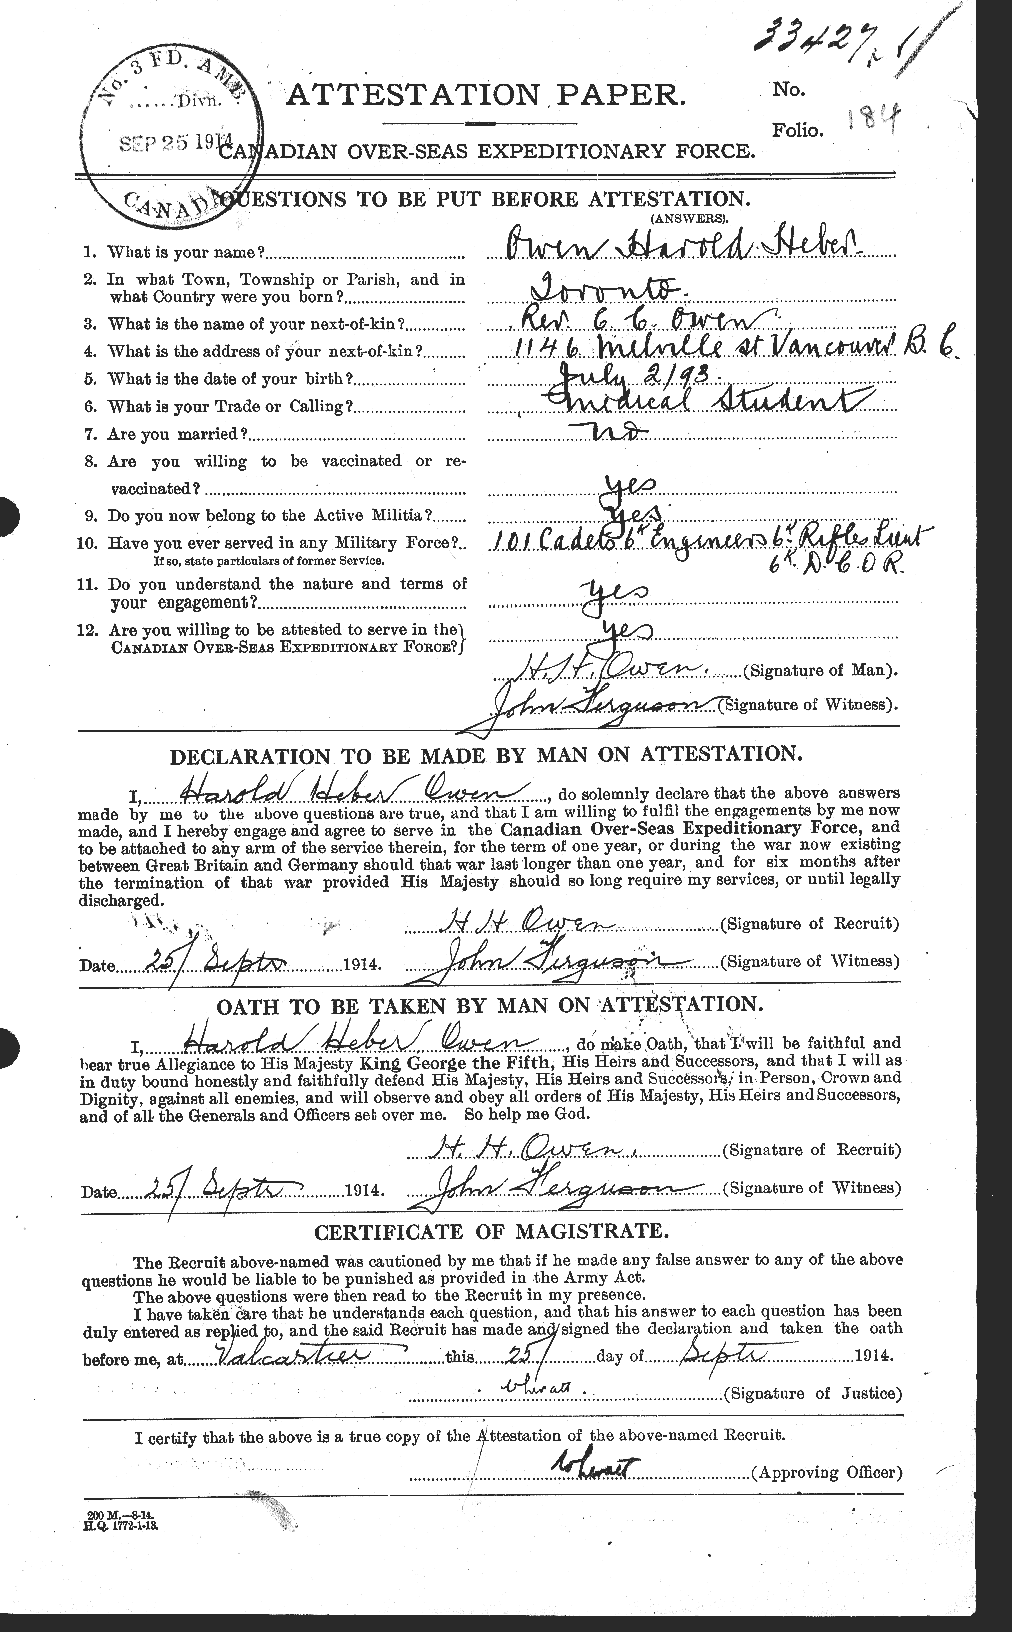 Dossiers du Personnel de la Première Guerre mondiale - CEC 561279a